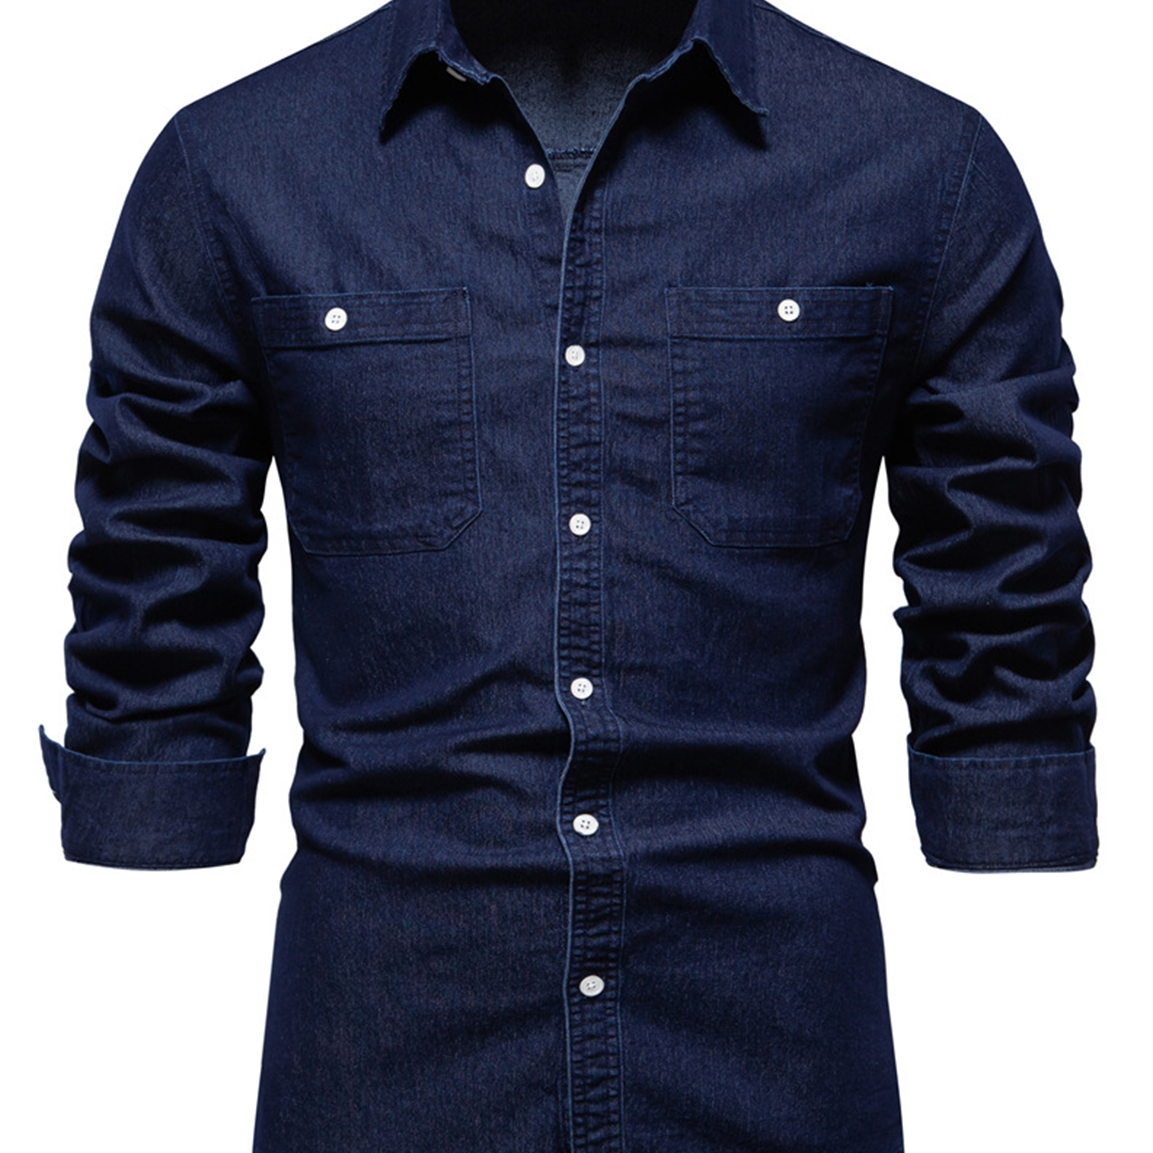 Men's Solid Color Denim Cotton Pocket Long Sleeve Shirt